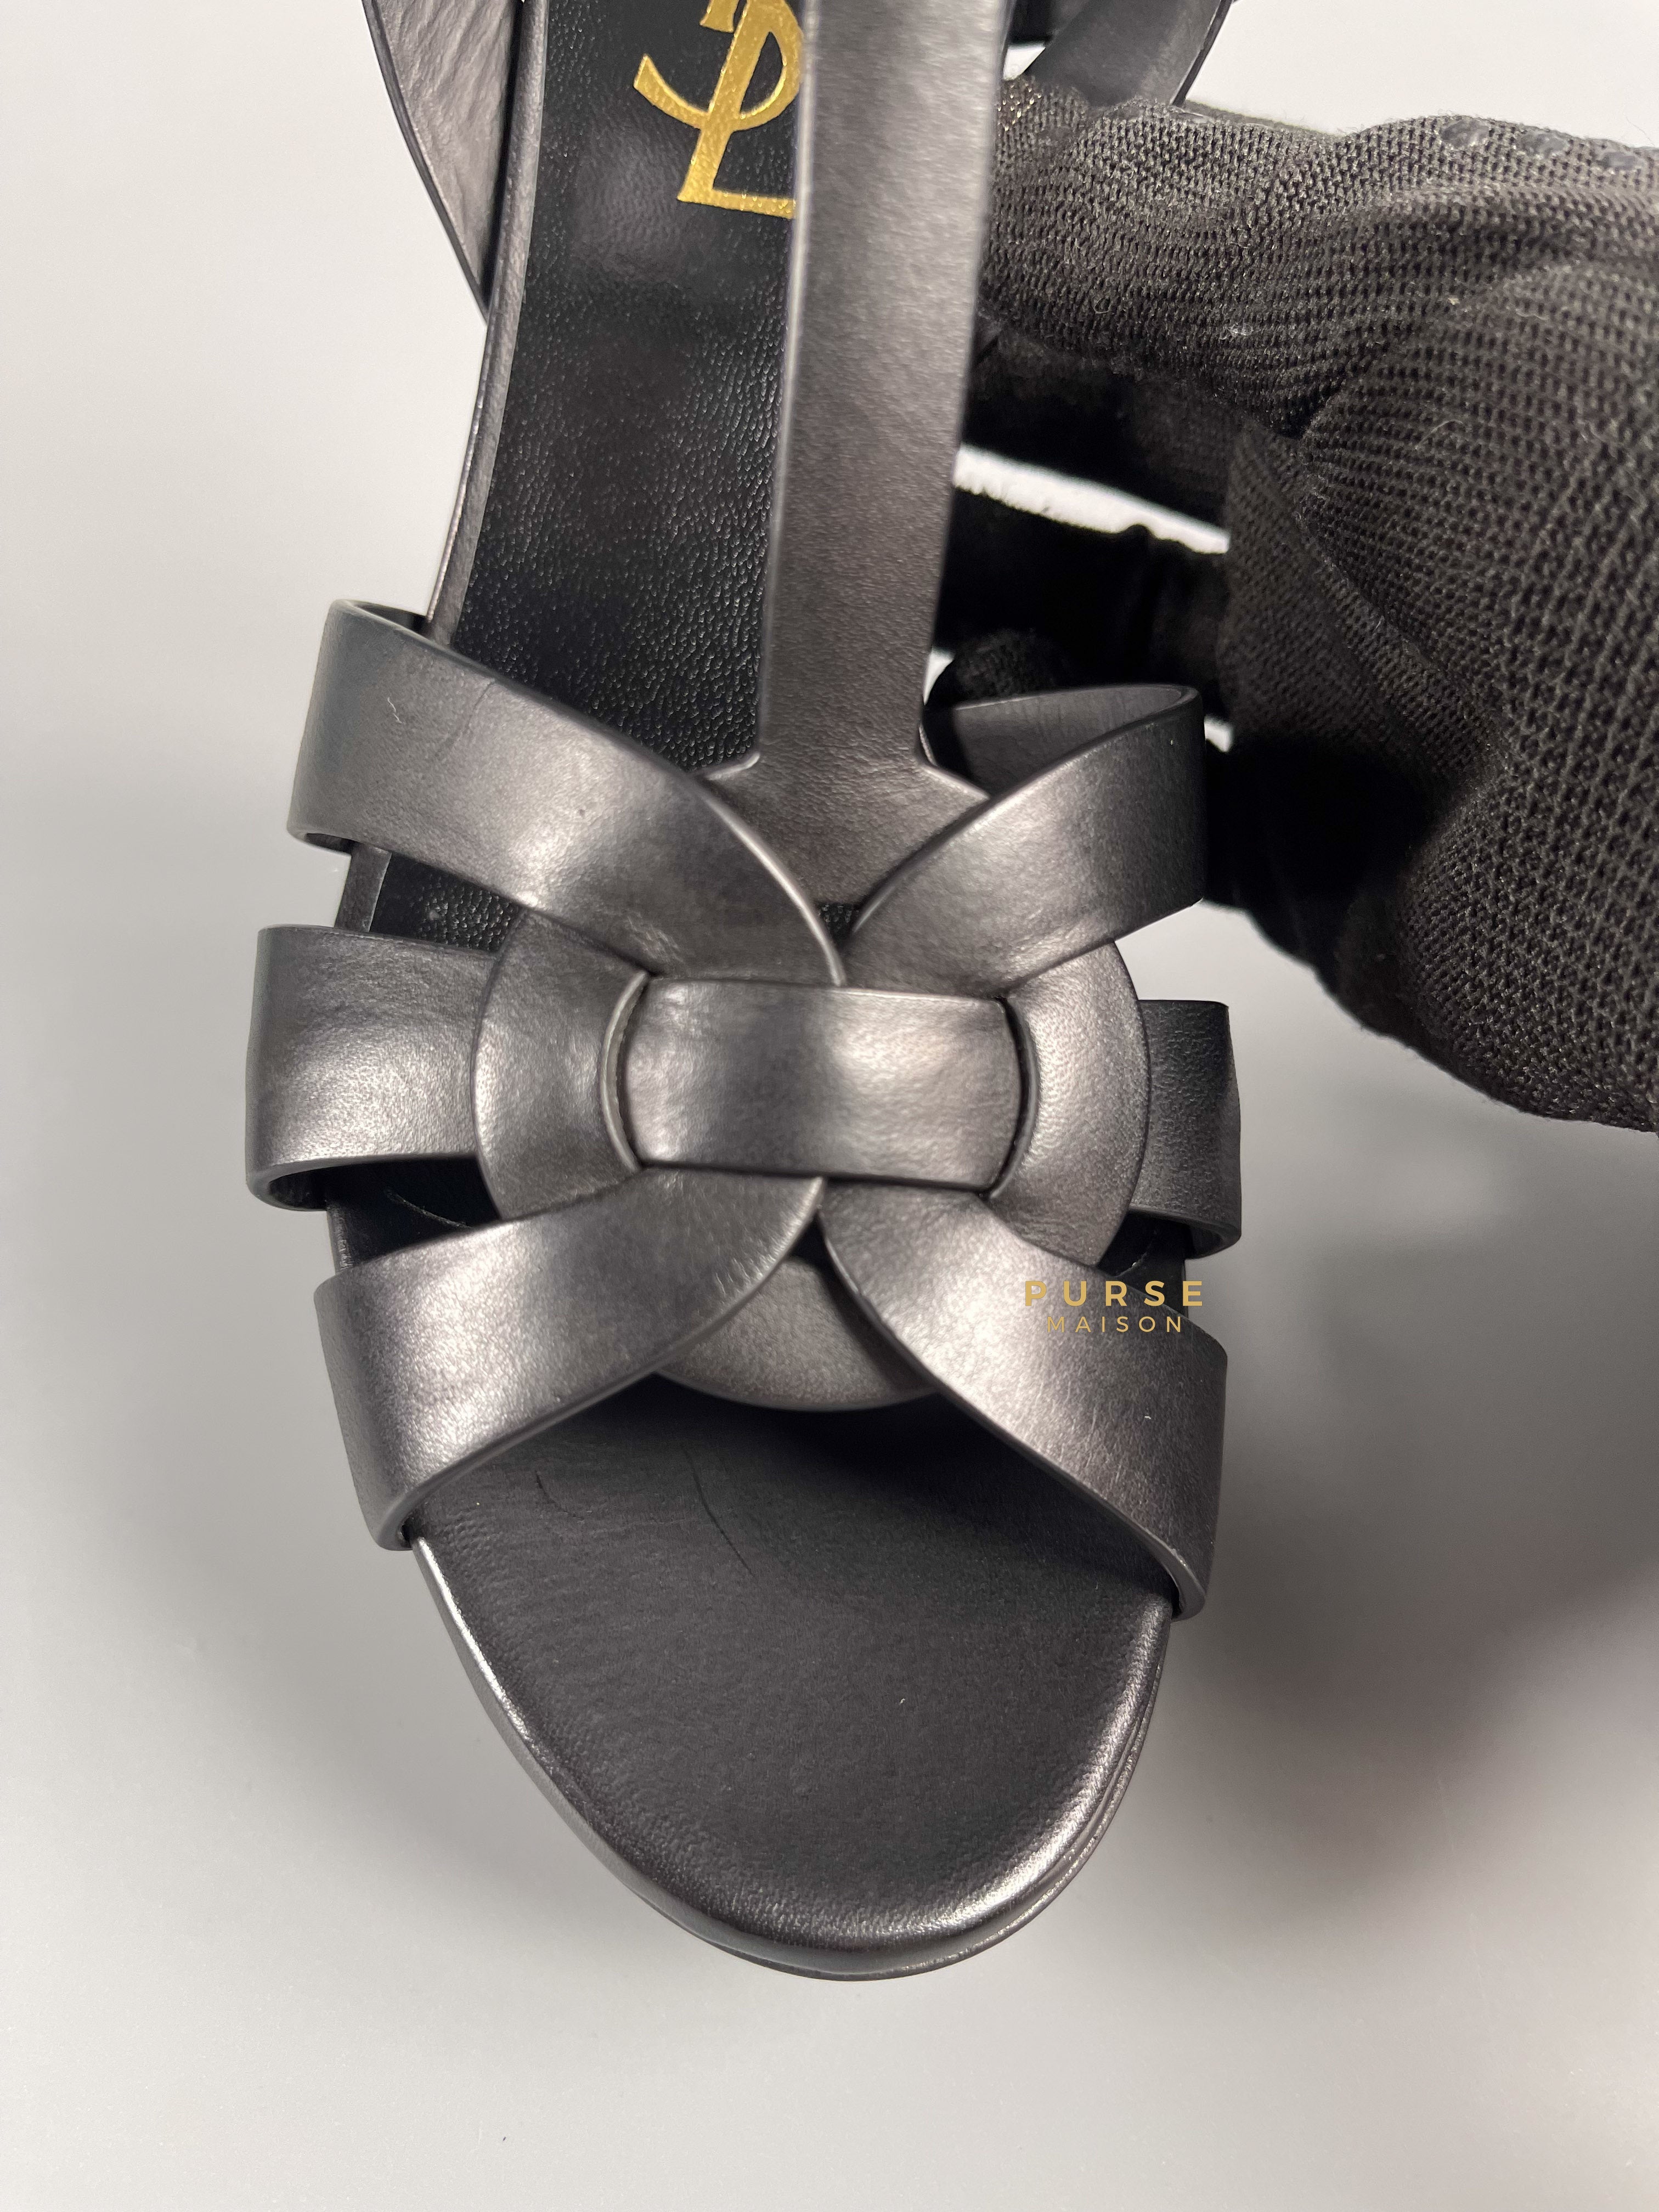 YSL Tribute Black High Heels Sandals (Size 35.5 EU, 23cm) | Purse Maison Luxury Bags Shop